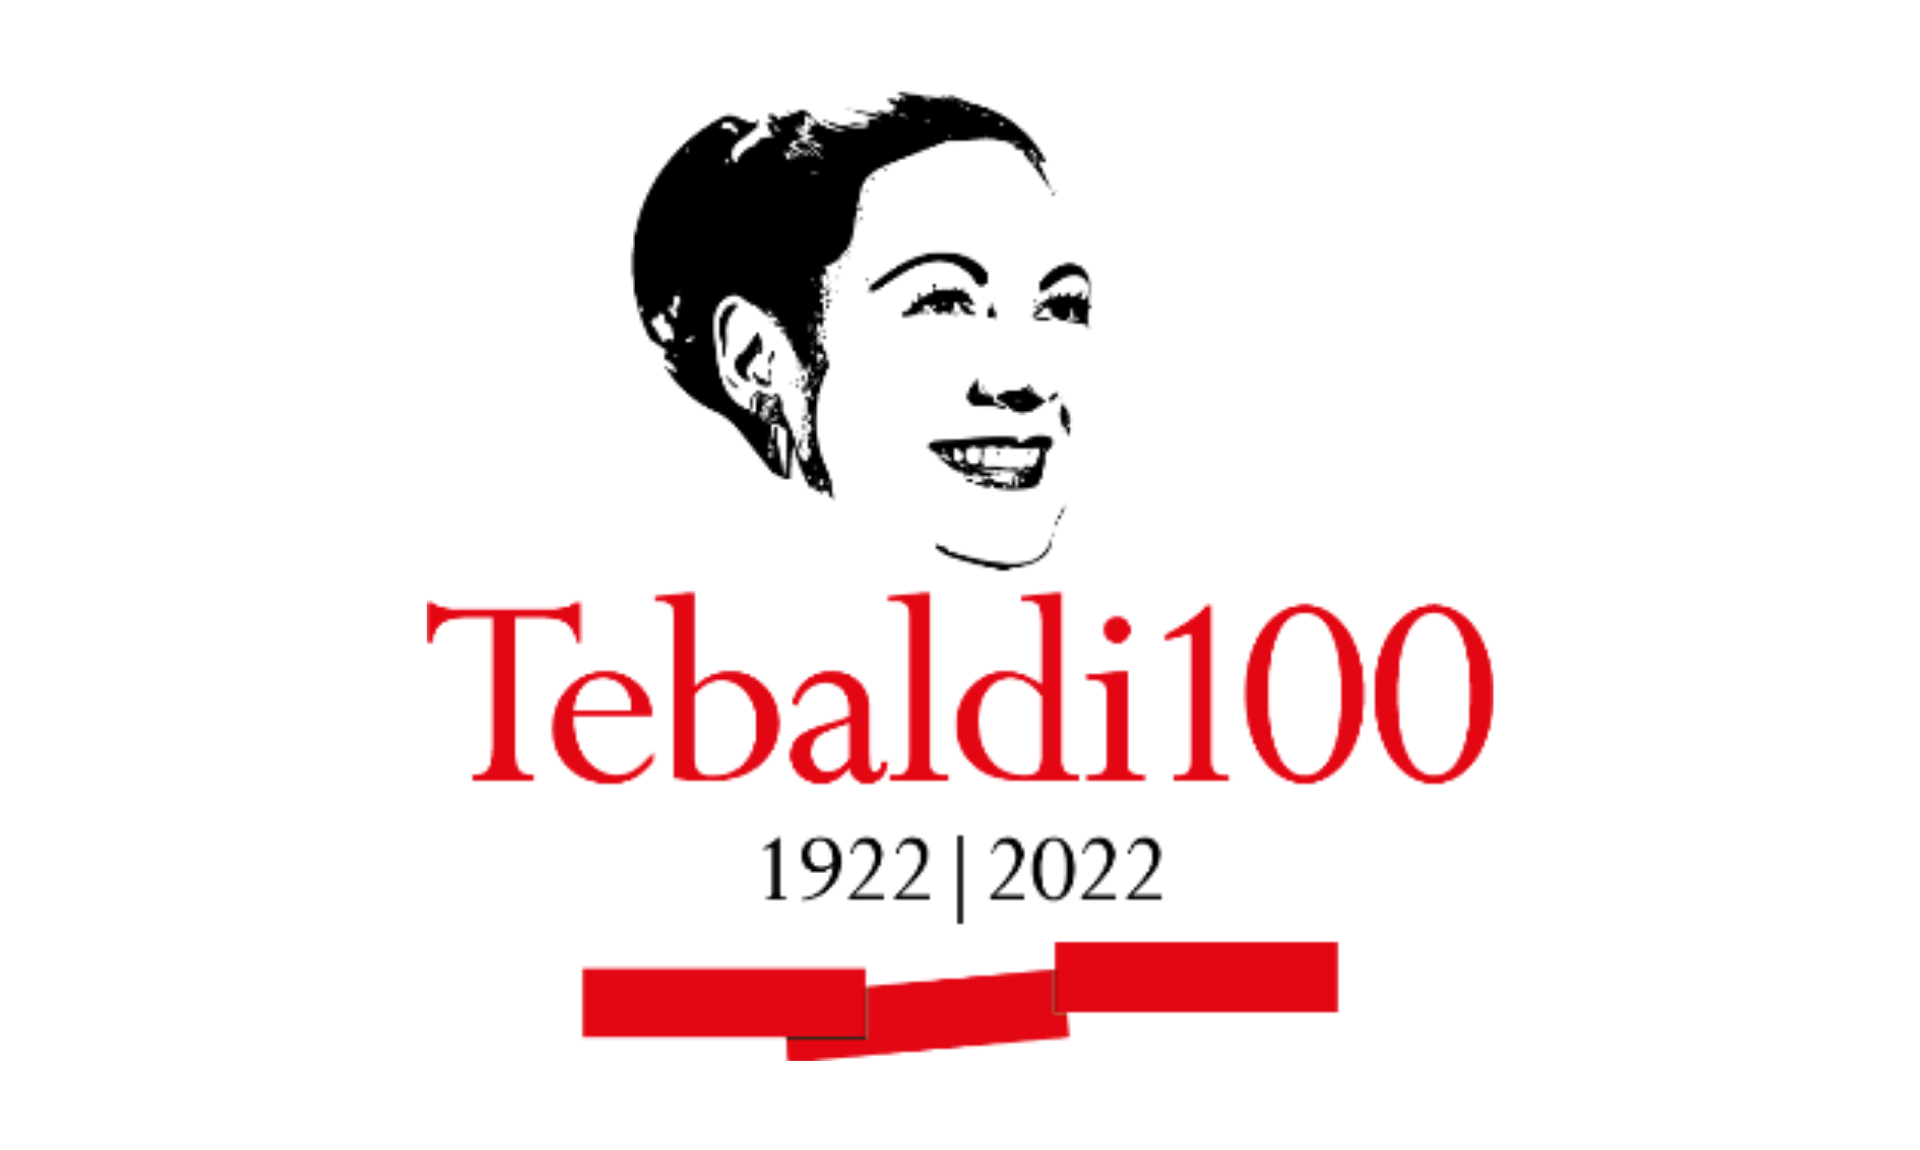 Tebaldi 100